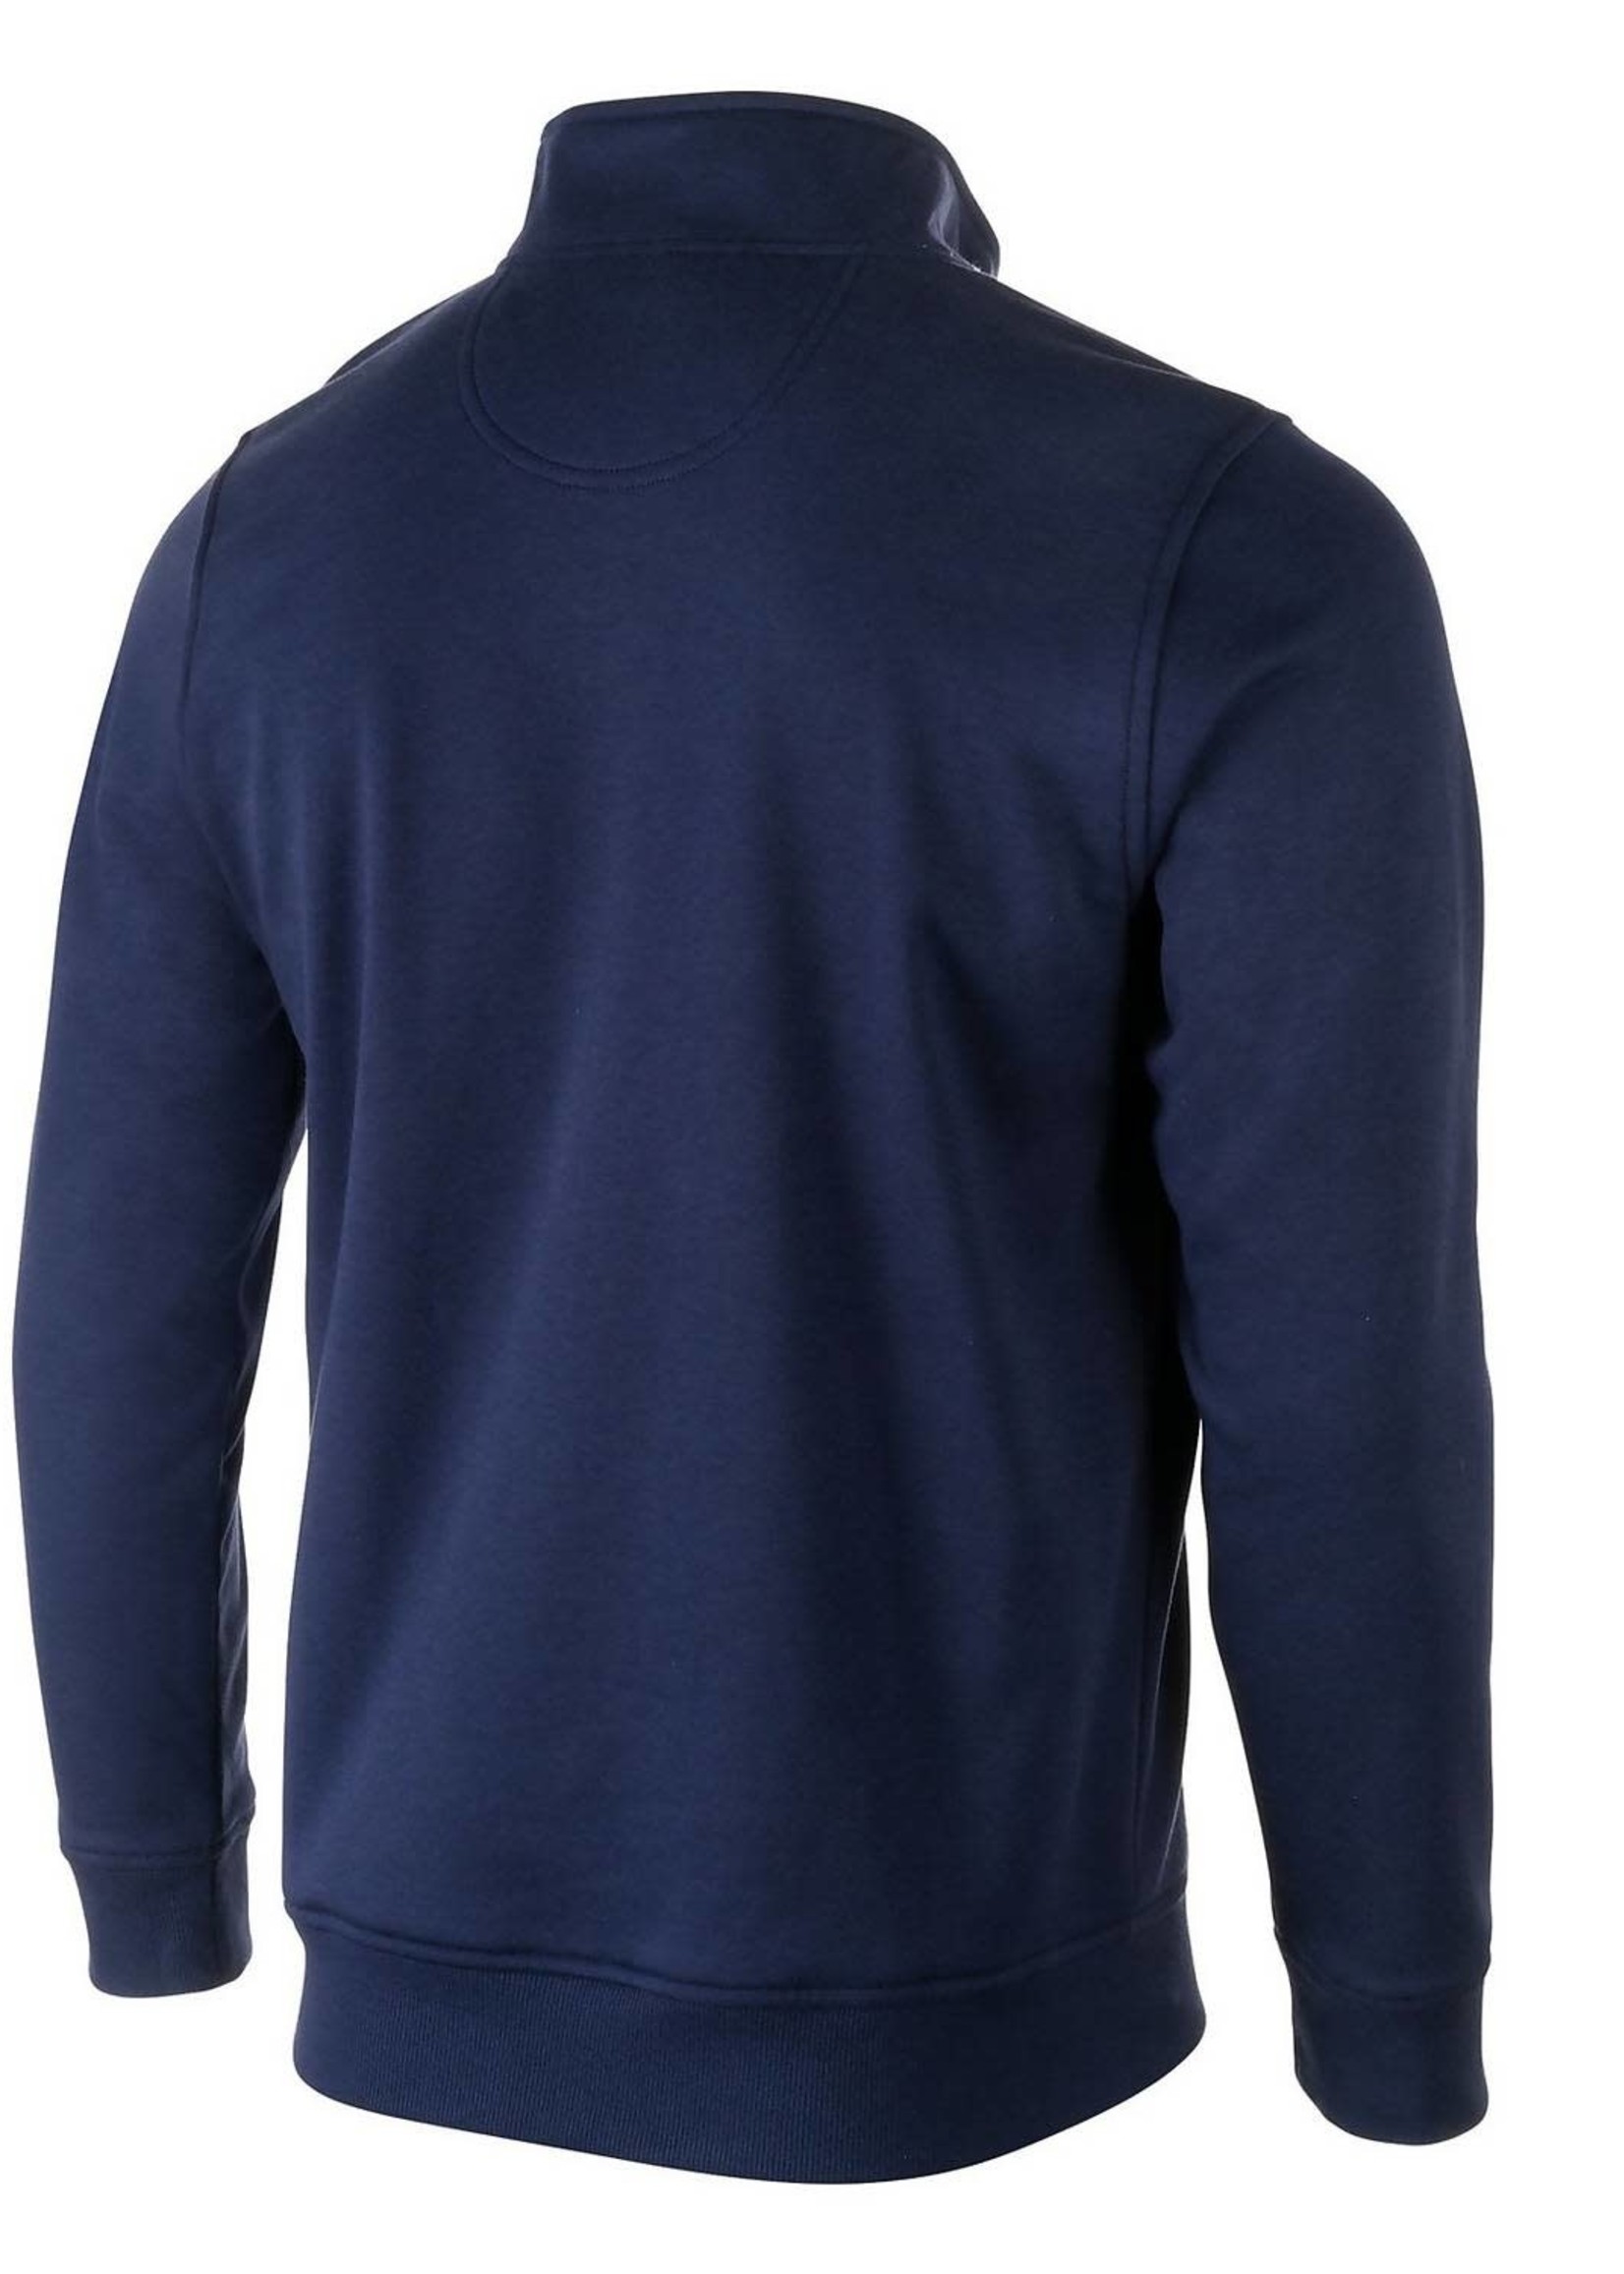 1/4 Zip Fleece Sweatshirt 434 Navy